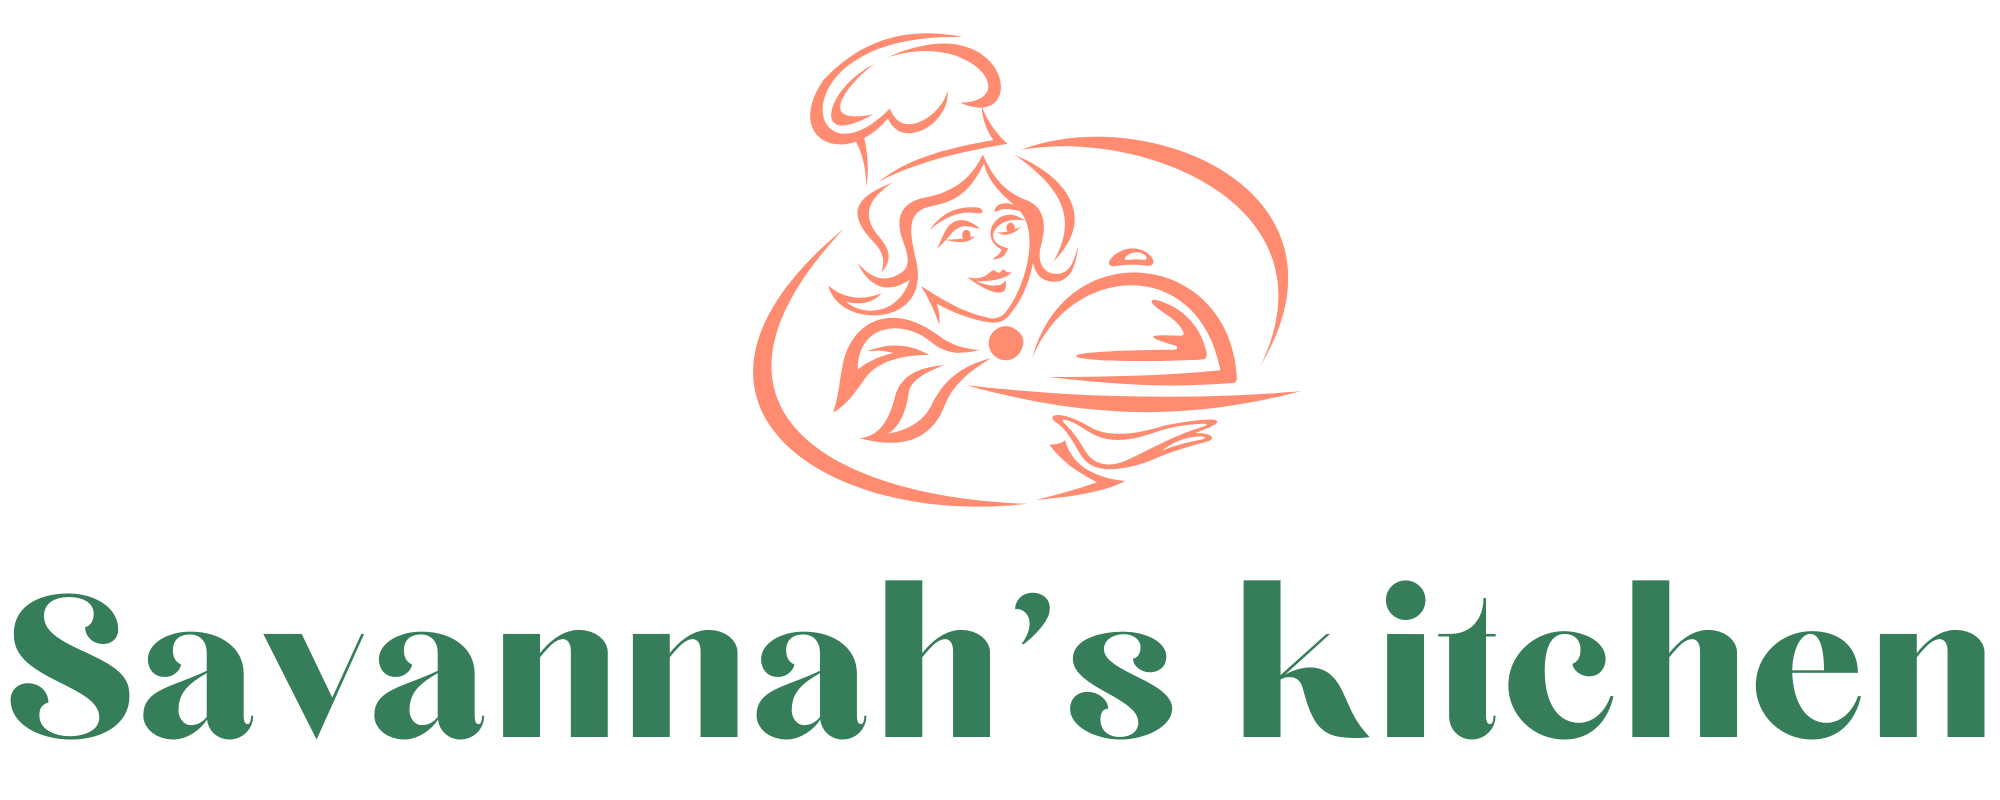 Savannah’s Kitchen